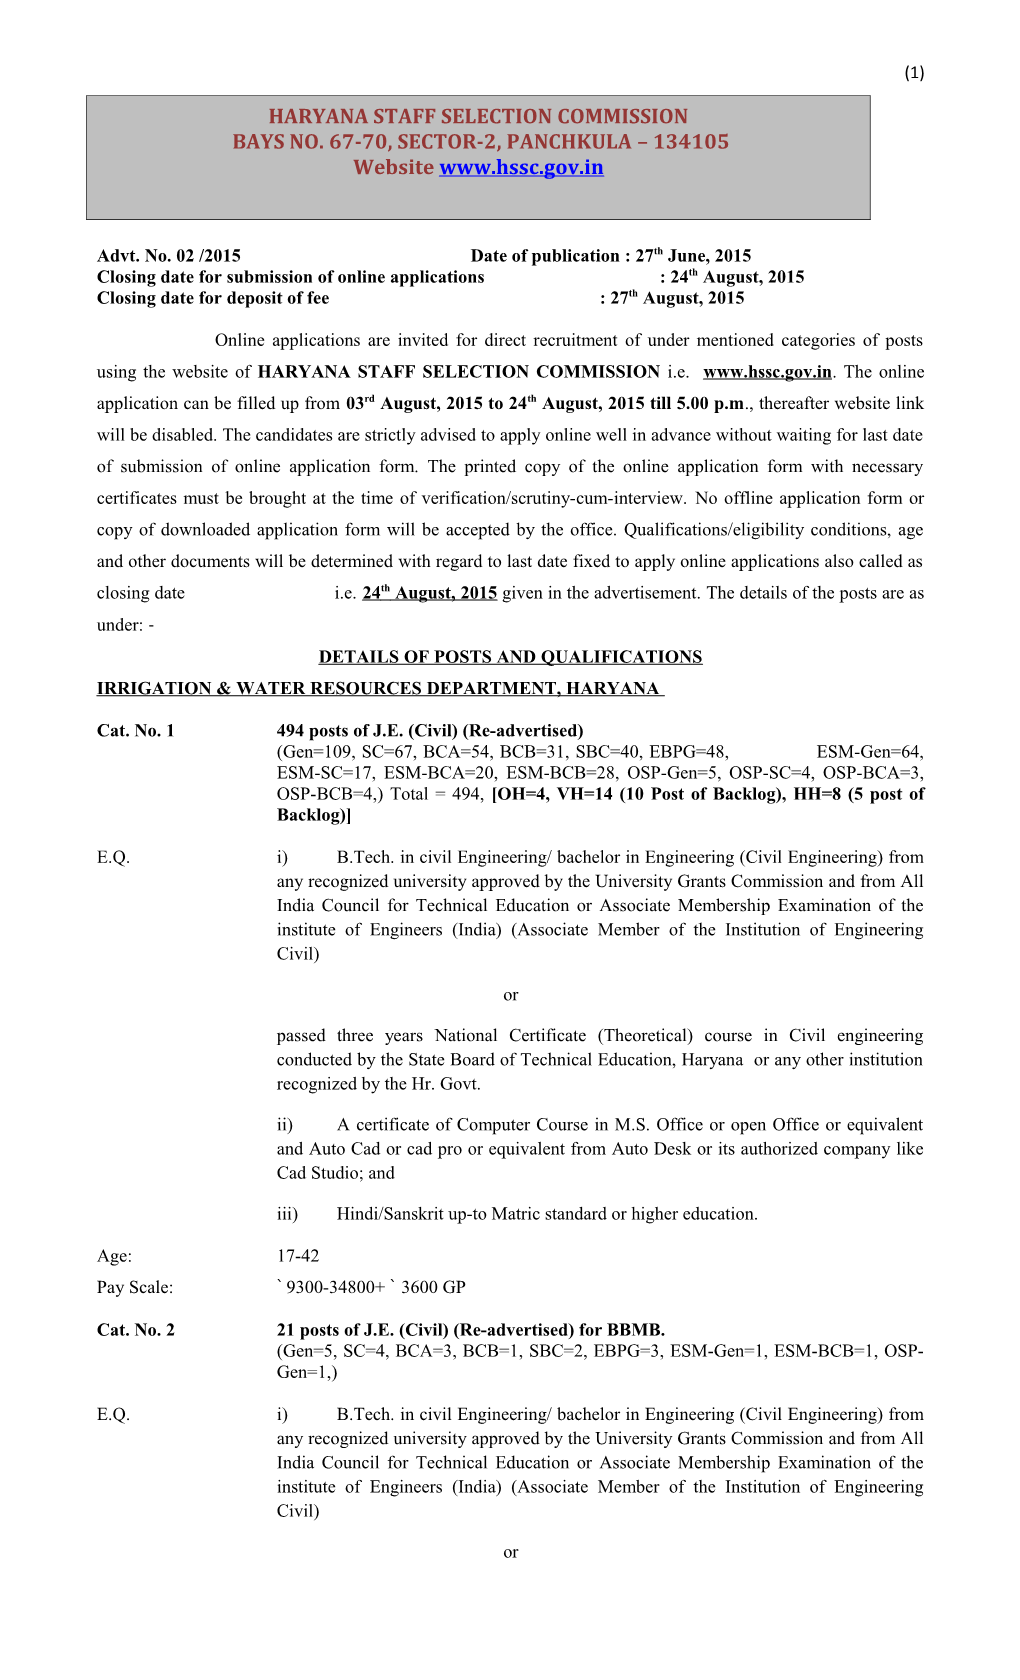 Advt. No. 02 /2015 Date of Publication: 27Th June, 2015